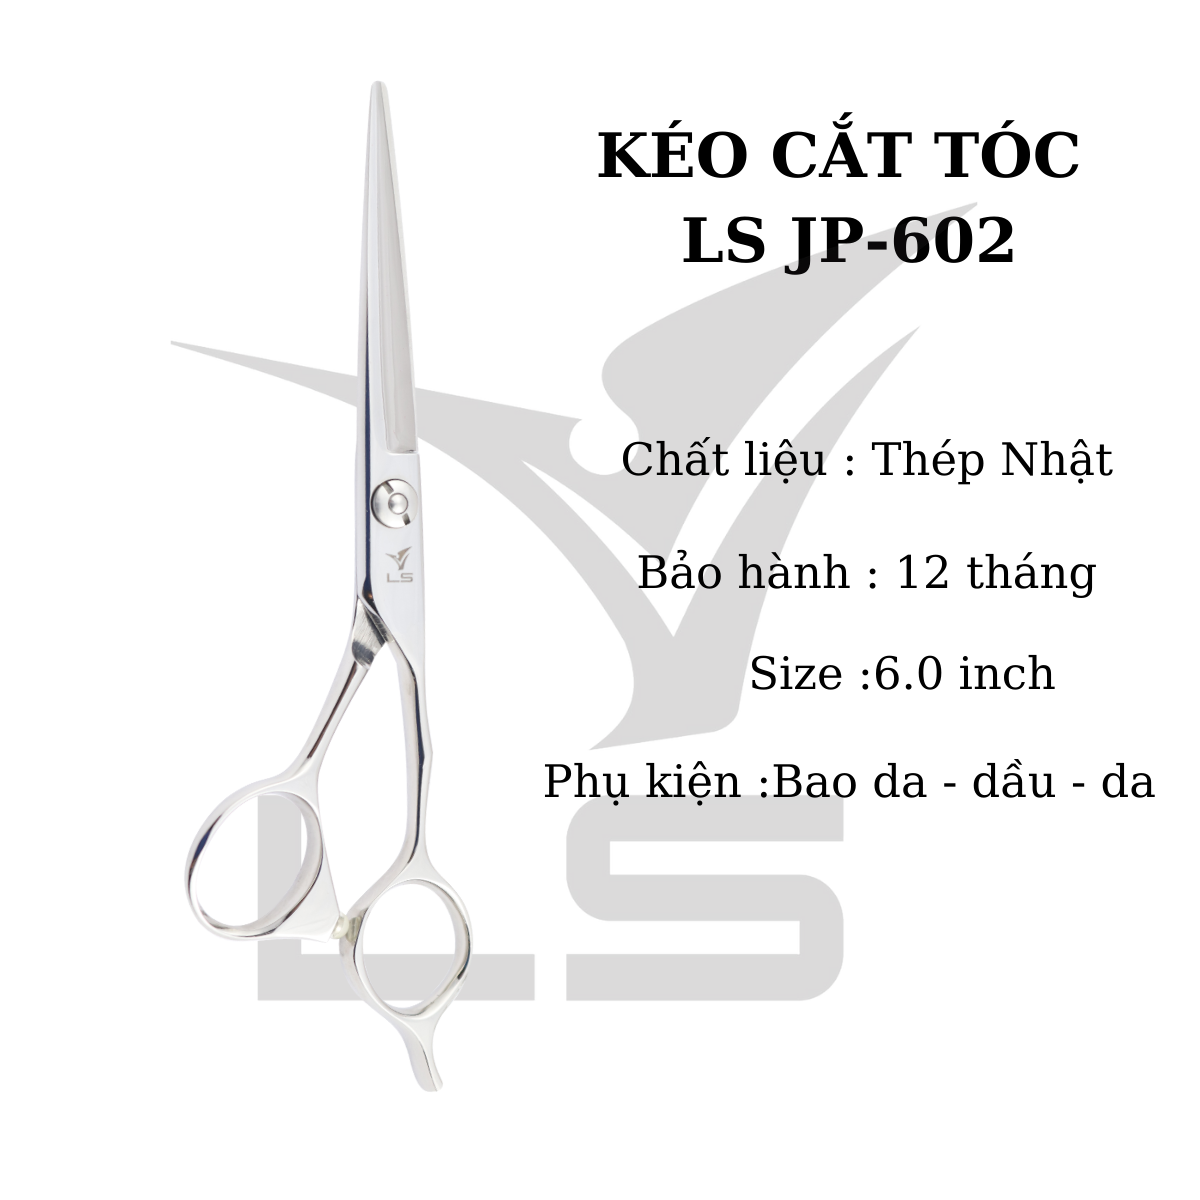 Kéo cắt tóc VIKO JP-602 size 6.0 HÀNG CHÍNH HÃNG